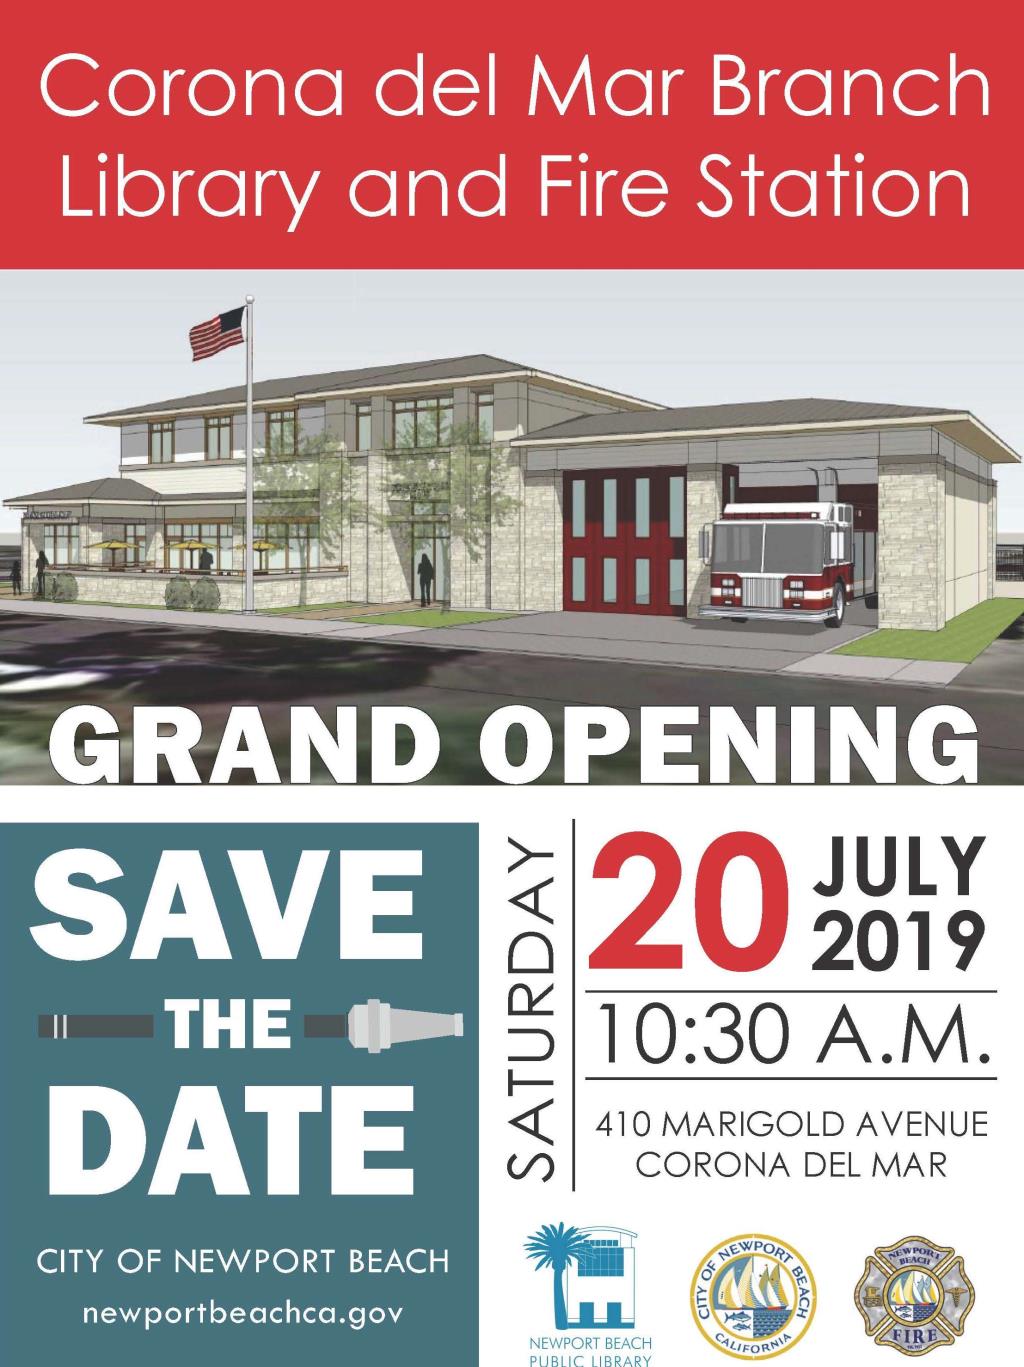 Corona del Mar Branch Library and Fire Station grand opening, save the date, Saturday, July 20, 2019, 10:30 a.m., 401 Marigold Avenue, Corona del Mar, newportbeachca.gov